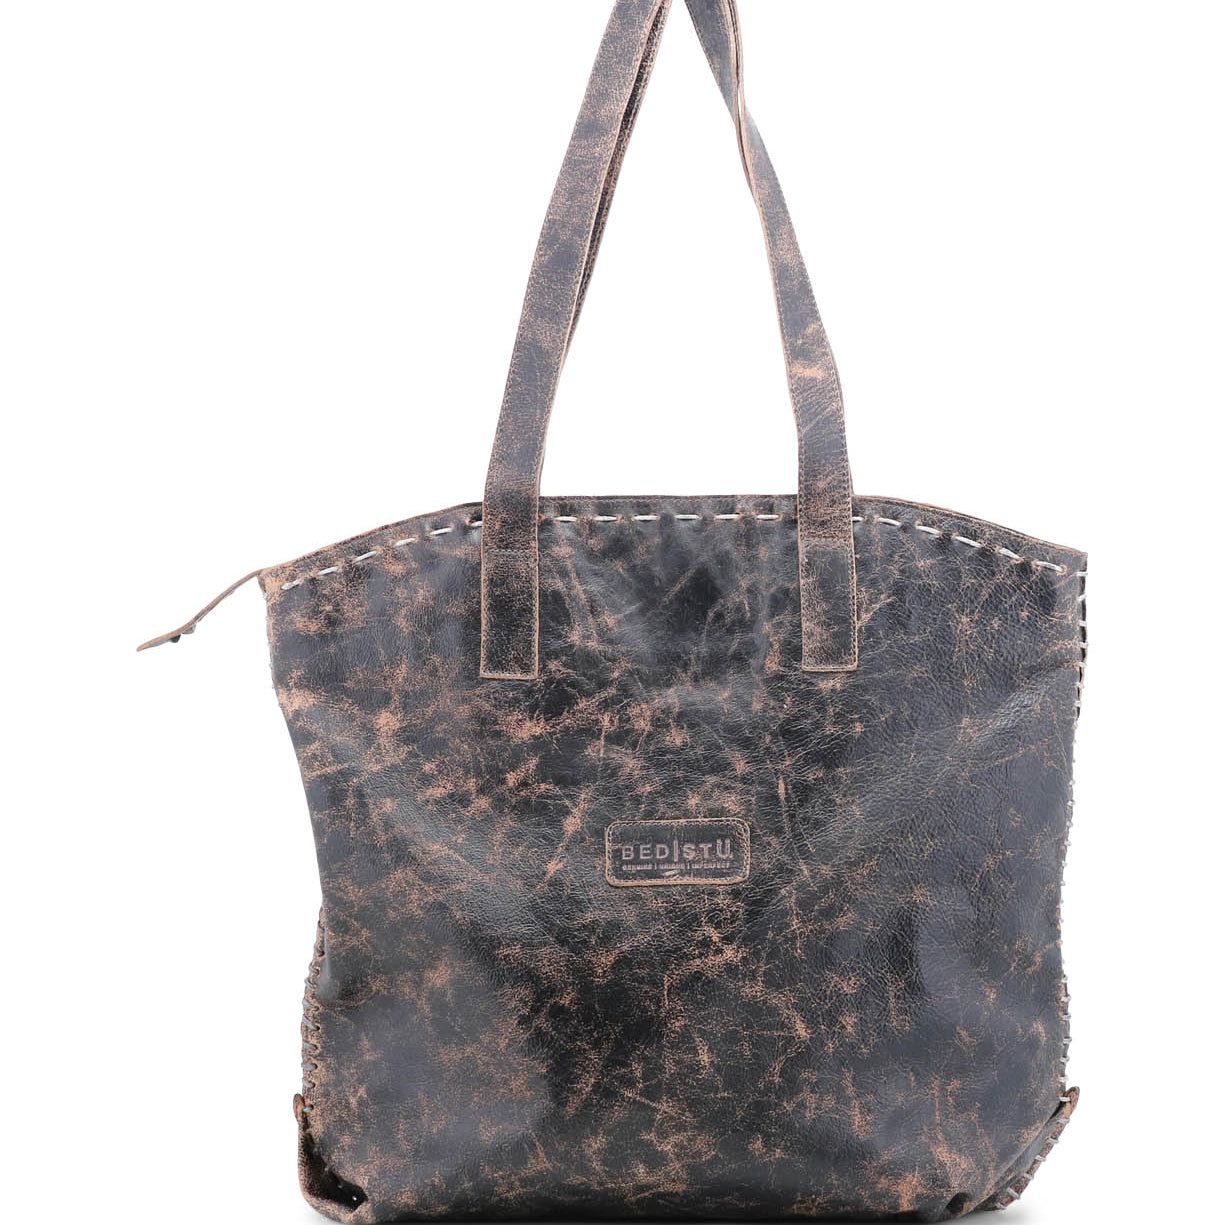 The Bed Stu Skye II black leather tote bag.